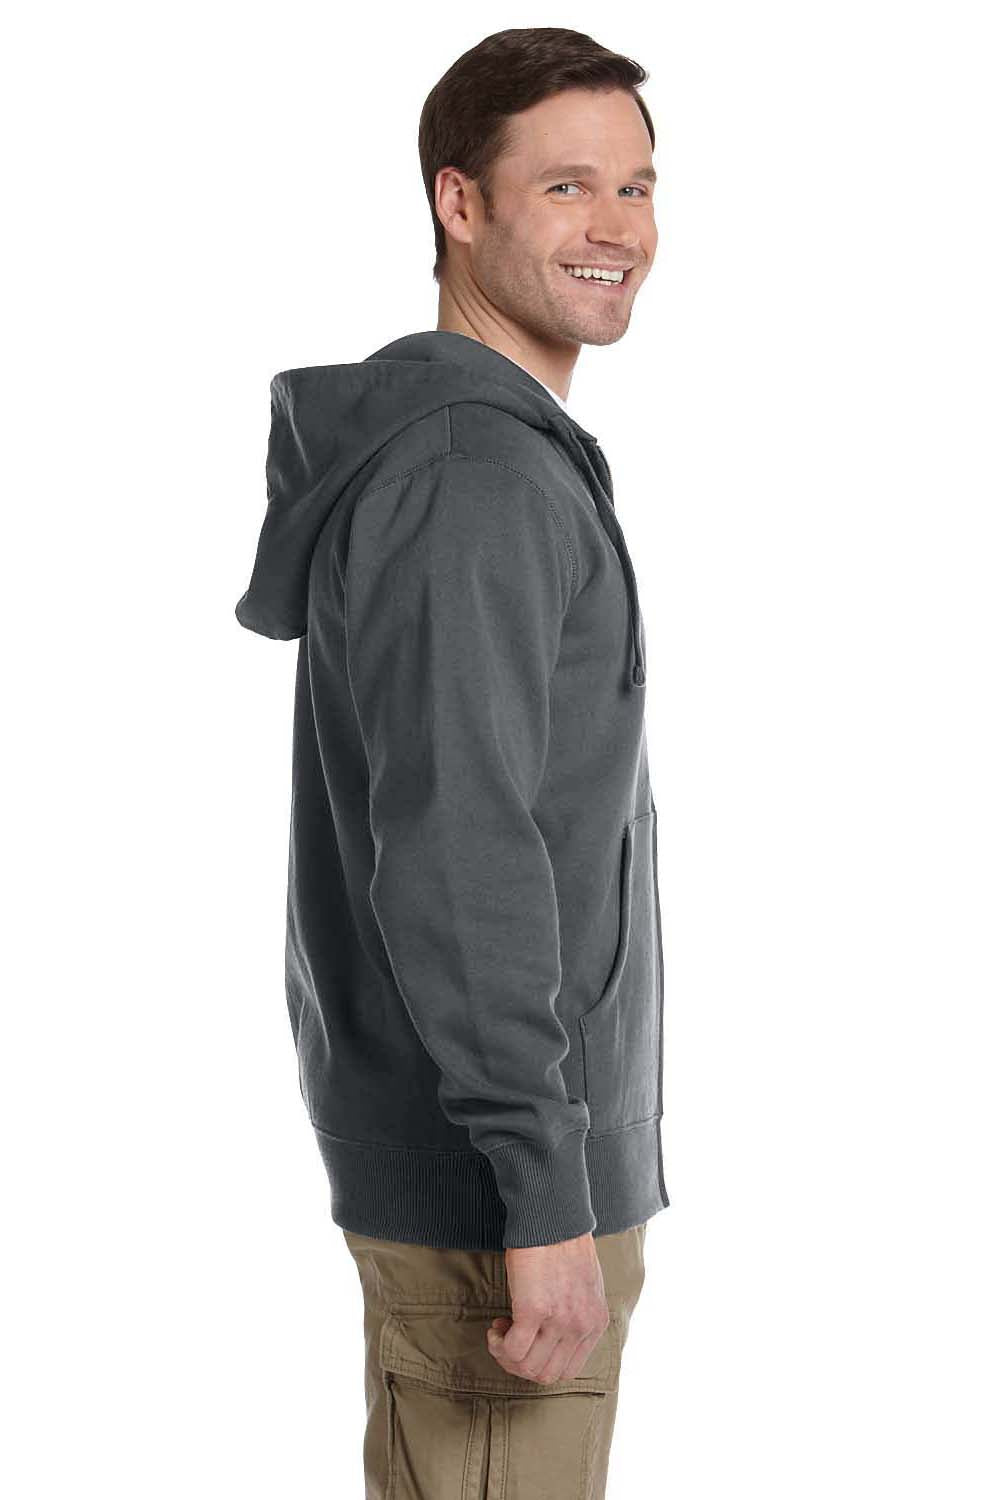 Econscious EC5650 Mens Full Zip Hooded Sweatshirt Hoodie Charcoal Grey Side